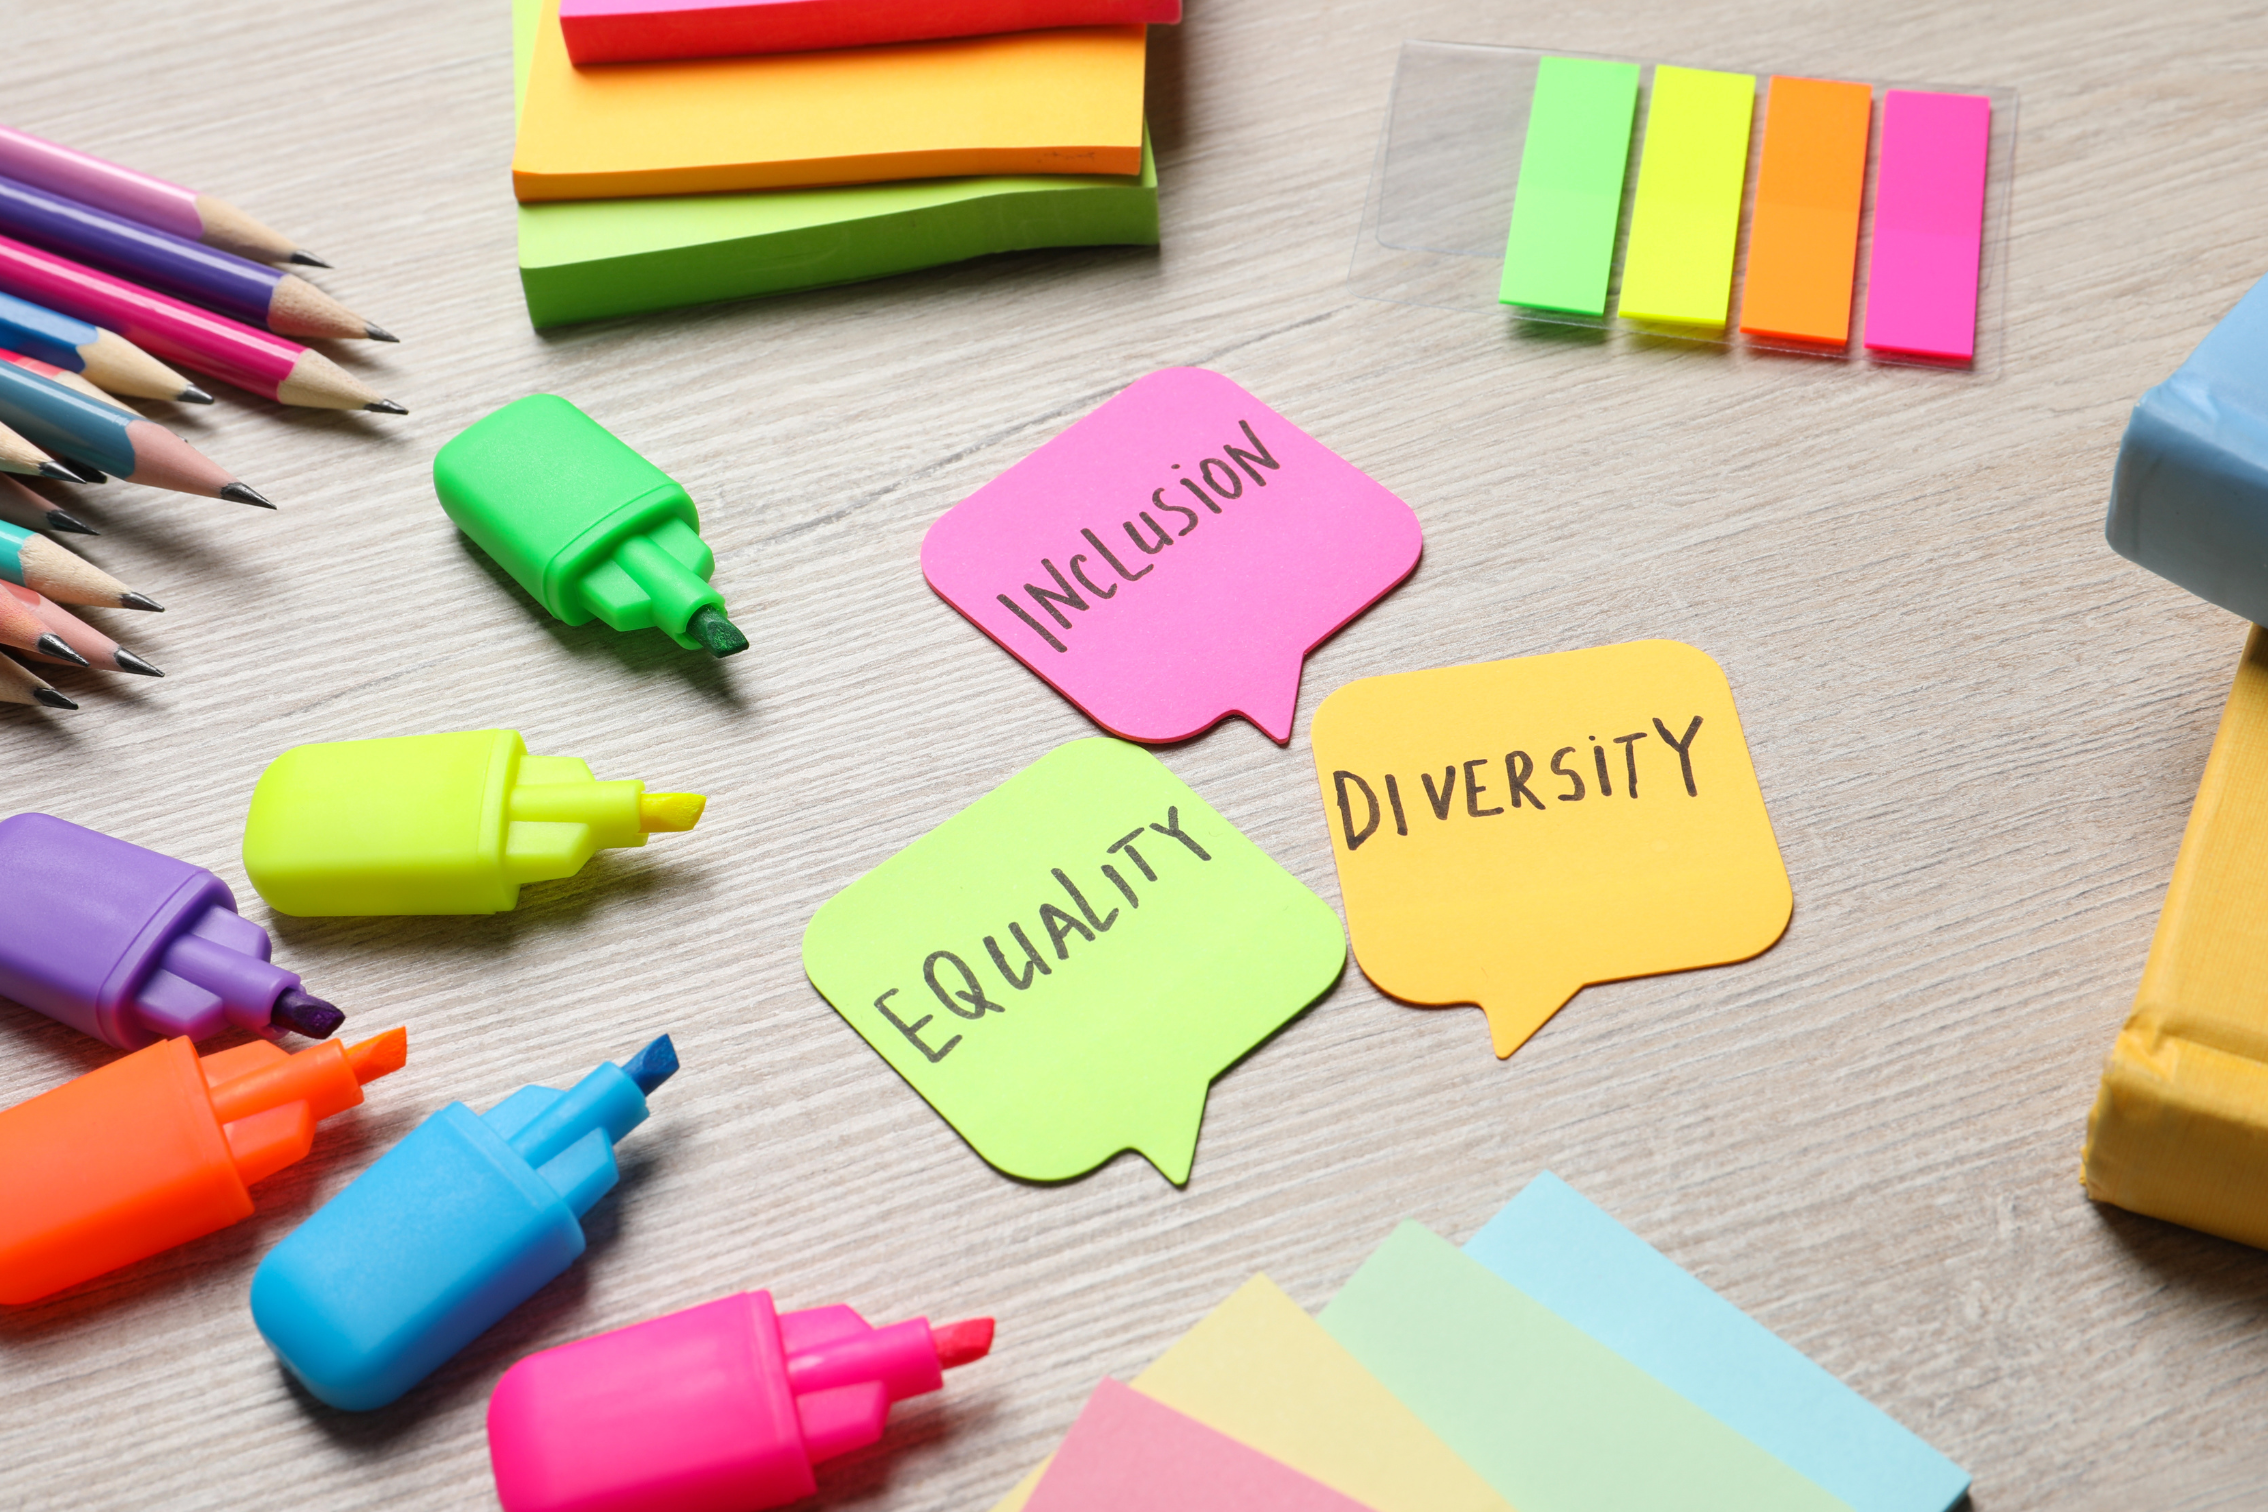 Auf dem Symbolbild sind Notizzettel, Textmarker-Stifte, Bleistifte in verschiedenen Formen und neonfarben abgebildet. In der Mitte finden sich die Worte Diversity, Equity, Inclusion auf je einem sprechblasenförmigen Notizzettel.